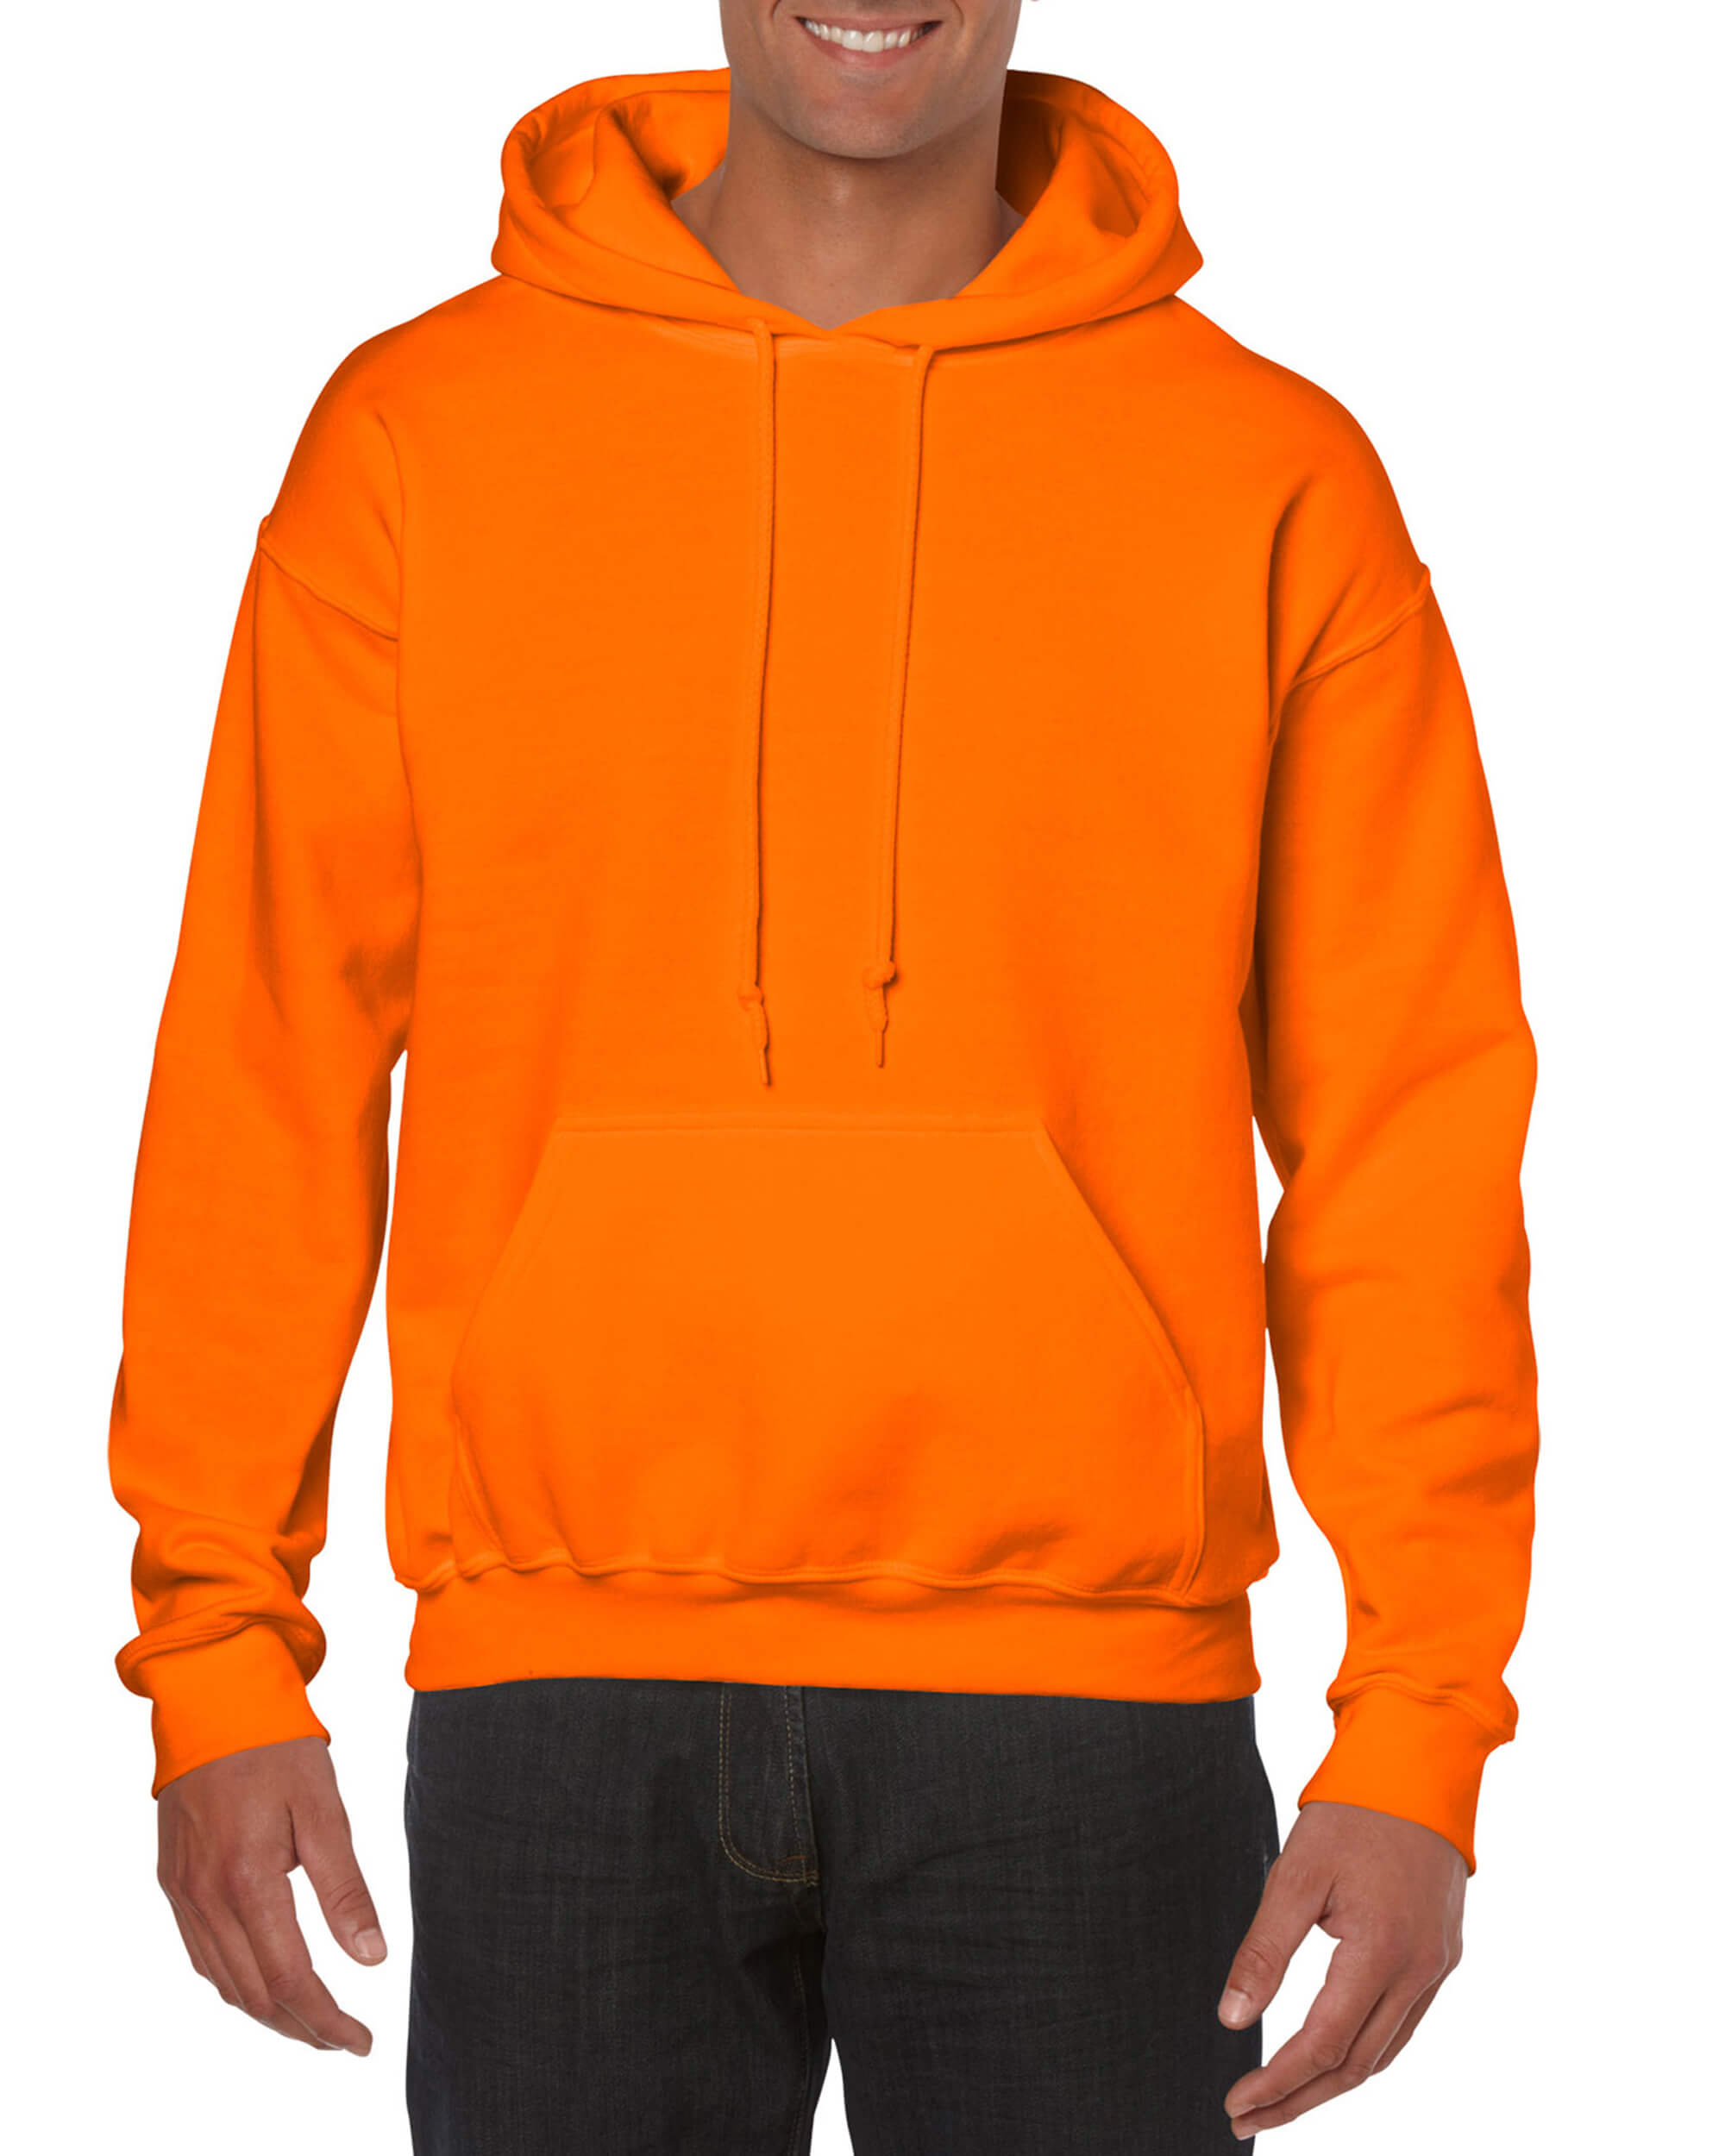 Pullover Hoodie - Safety Orange